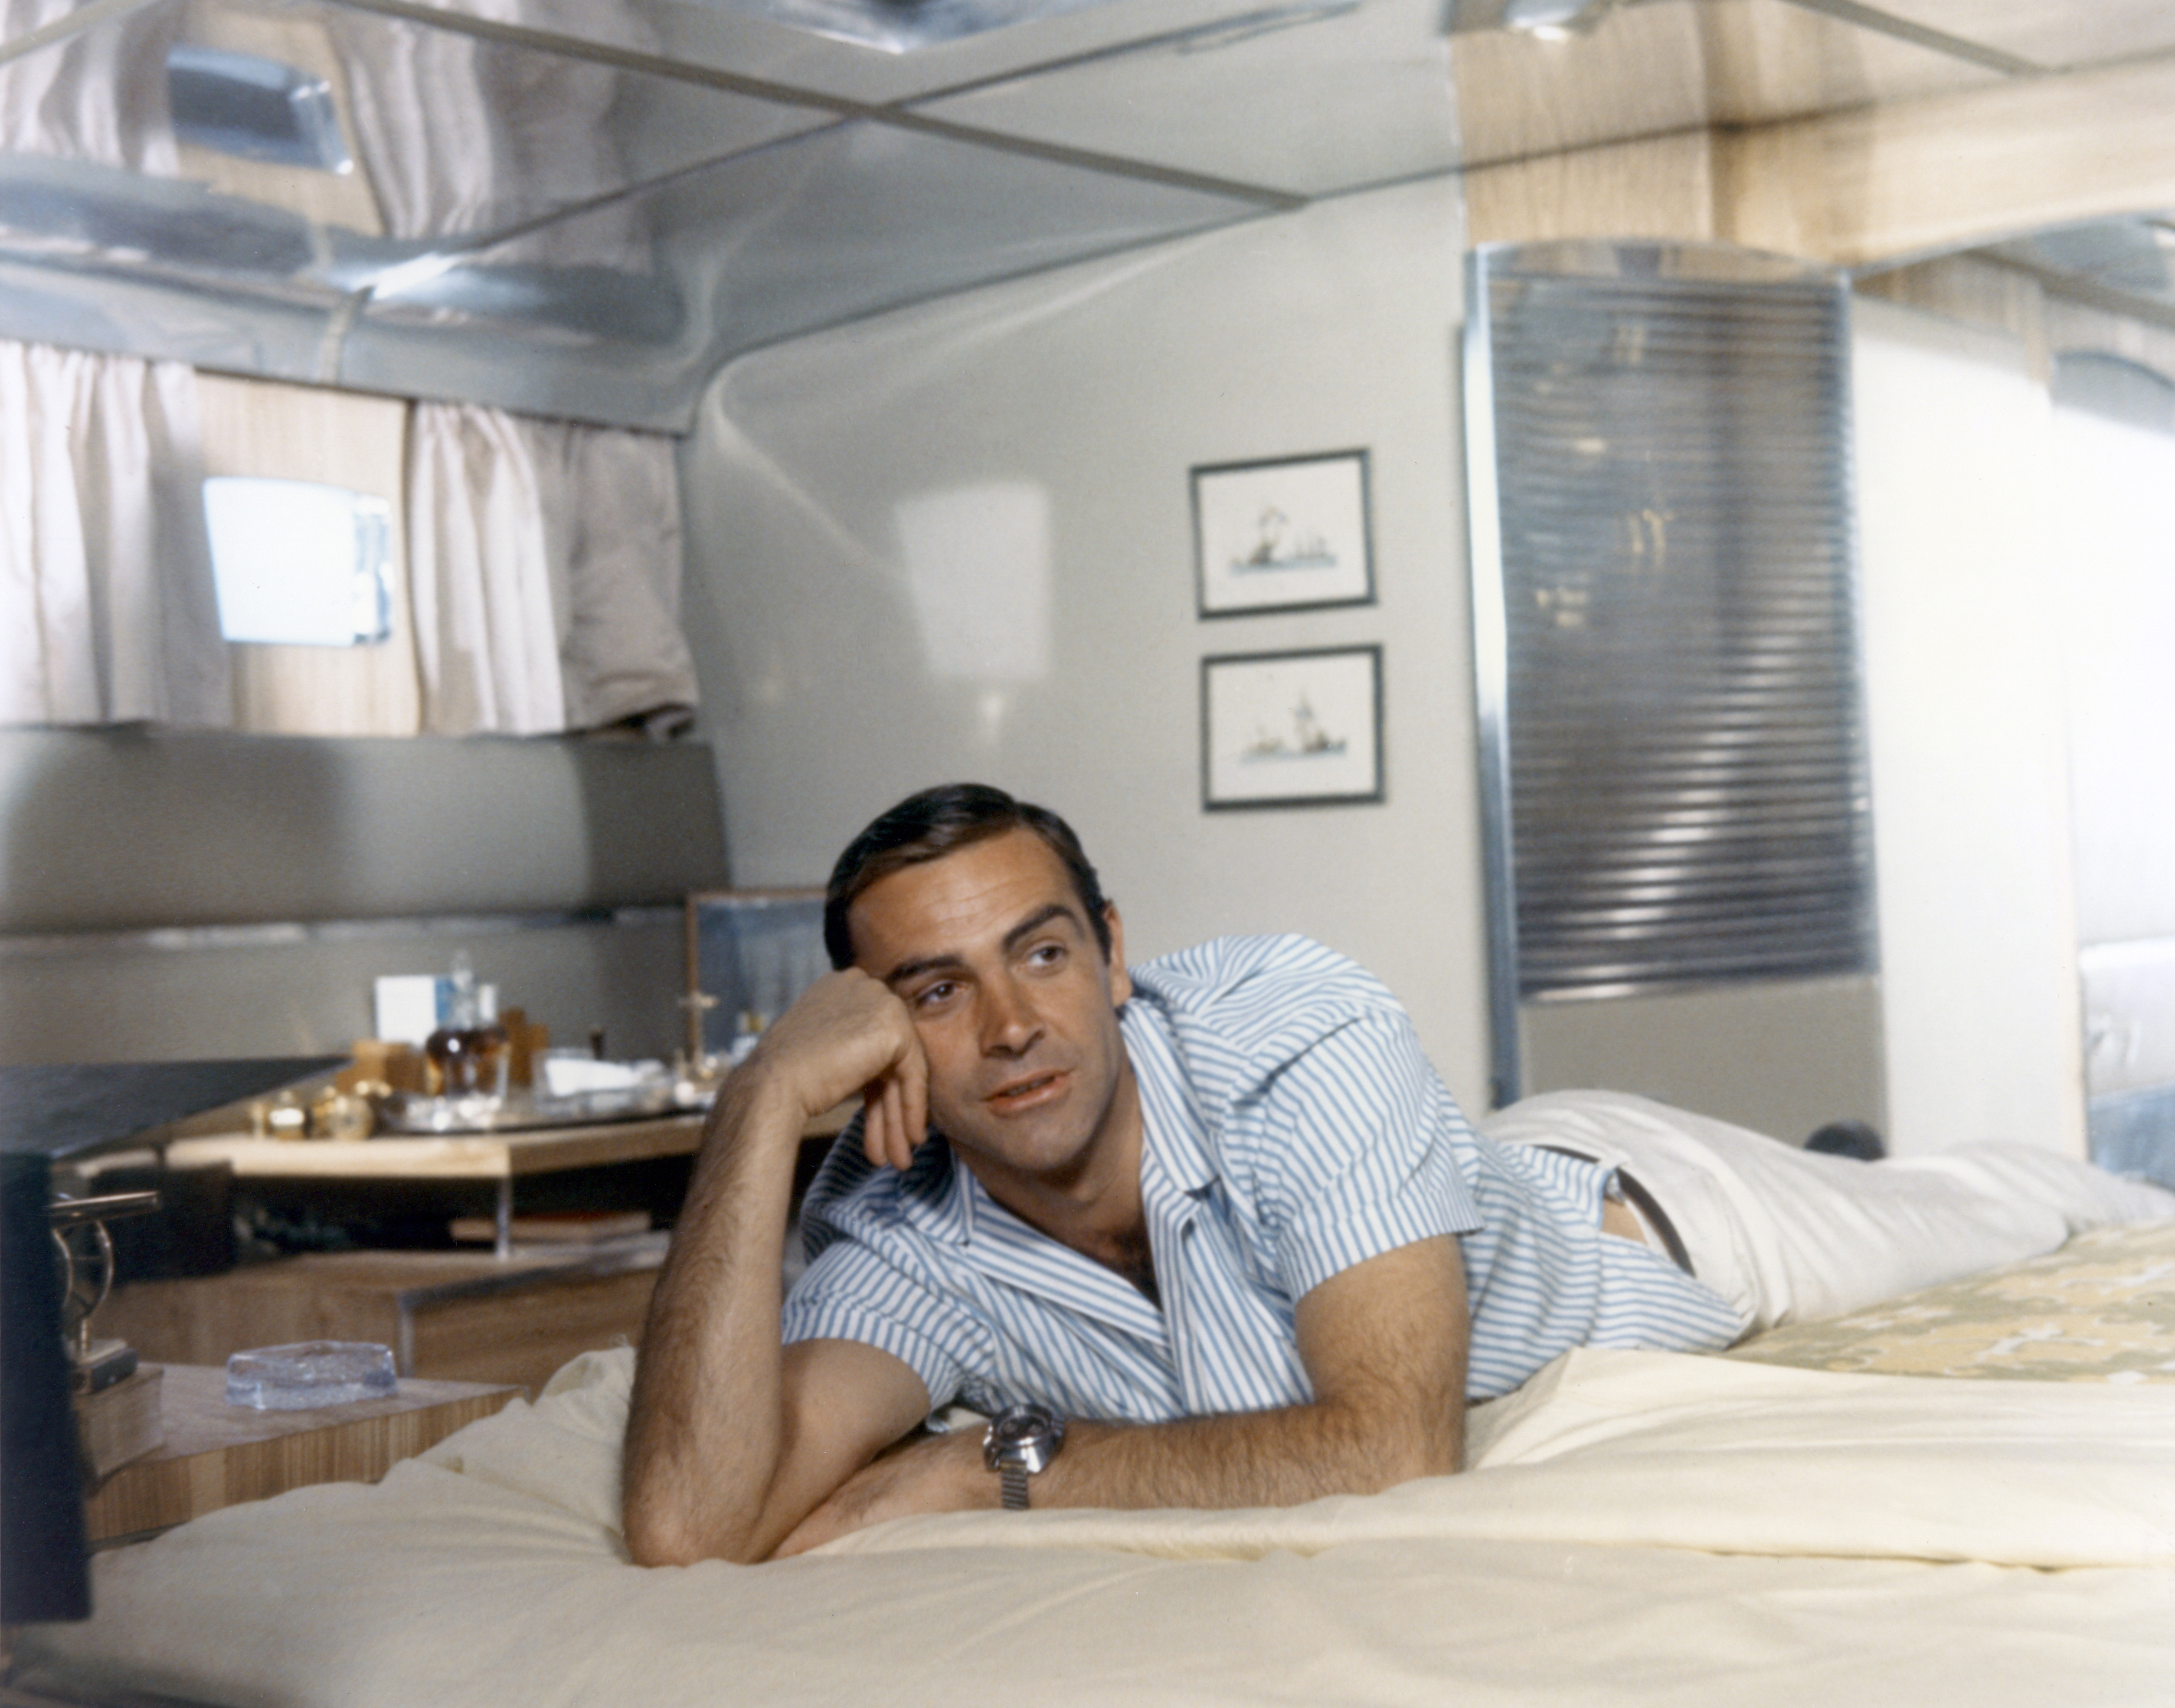 Sean Connery sur le plateau de tournage du film "Opération Tonnerre", vers 1965. | Source : Getty Images